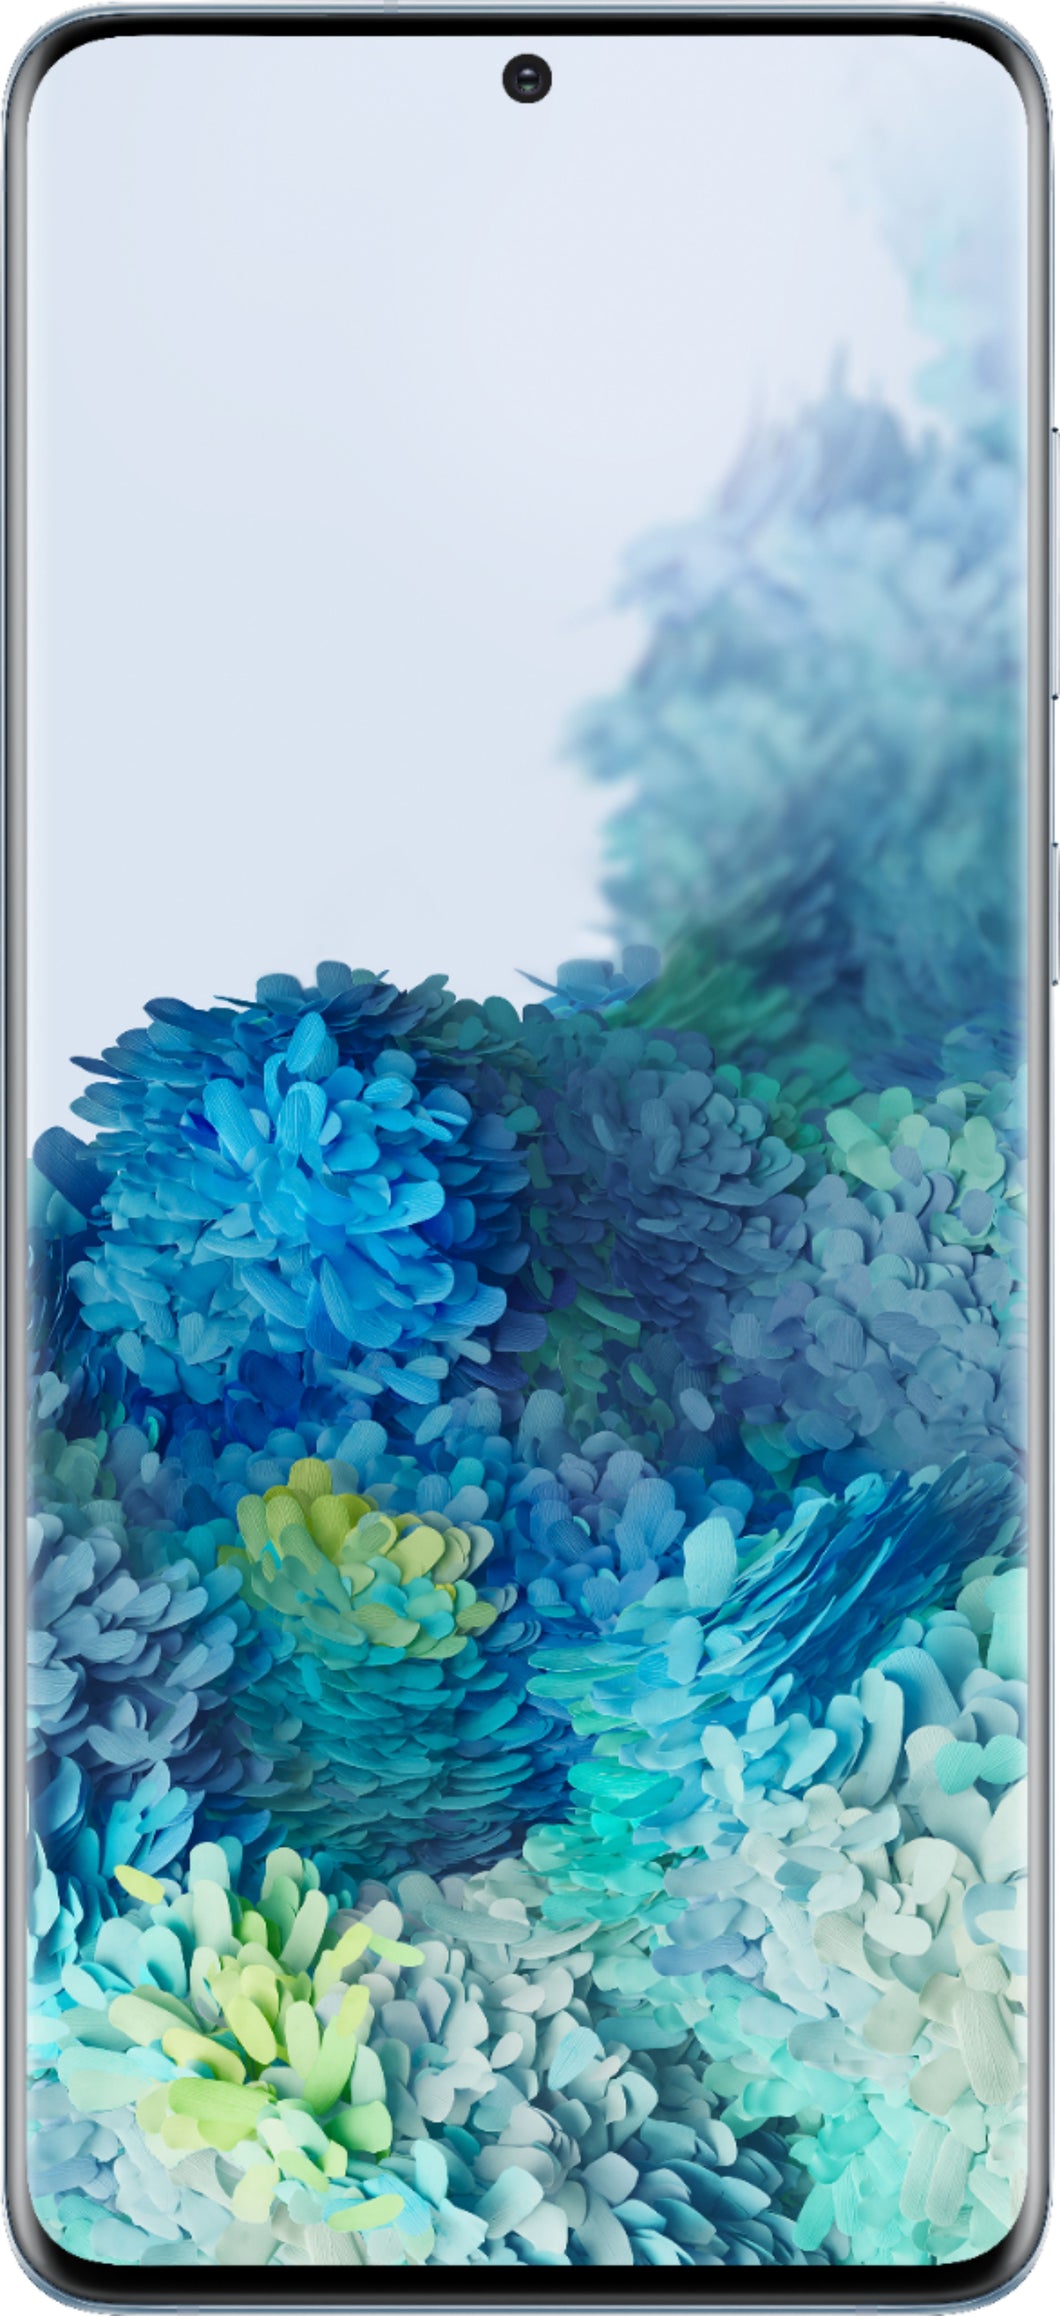 Galaxy S20+ 5G 128GB - Cloud Blue - Fully unlocked (GSM & CDMA)